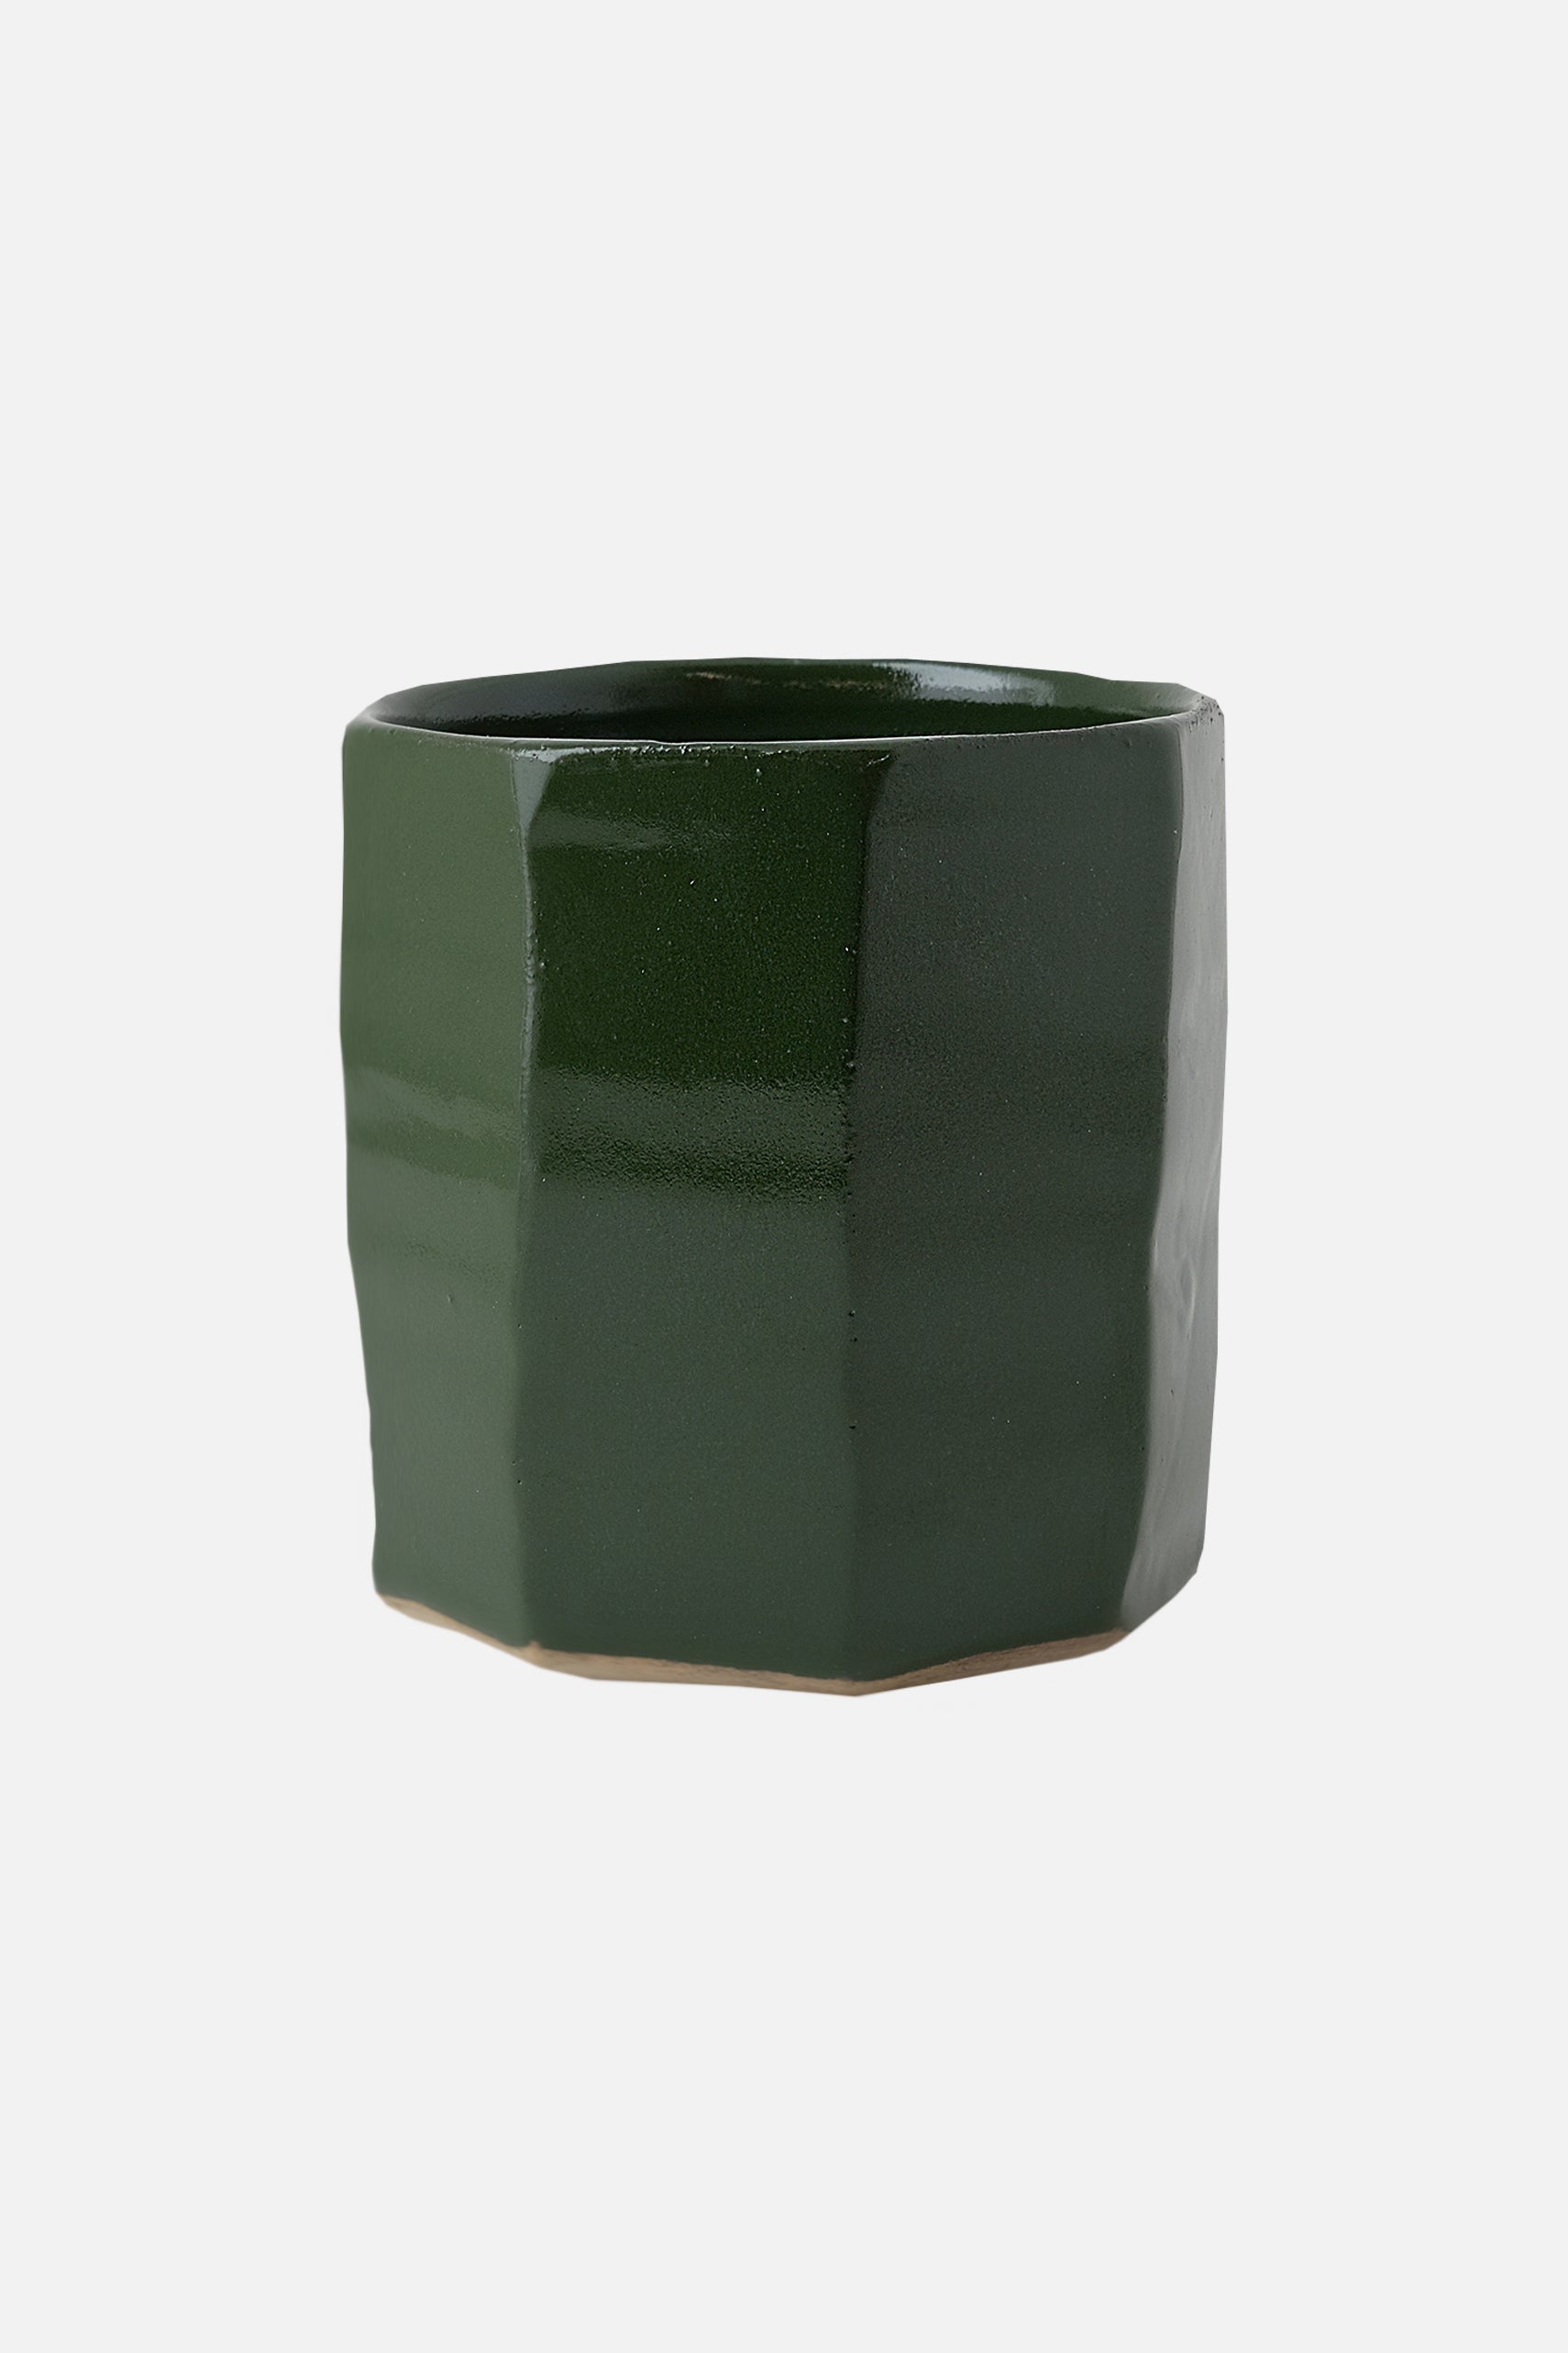 Trim mug green glossy-KIOSK48TH+Katrine Würtz-KIOSK48TH